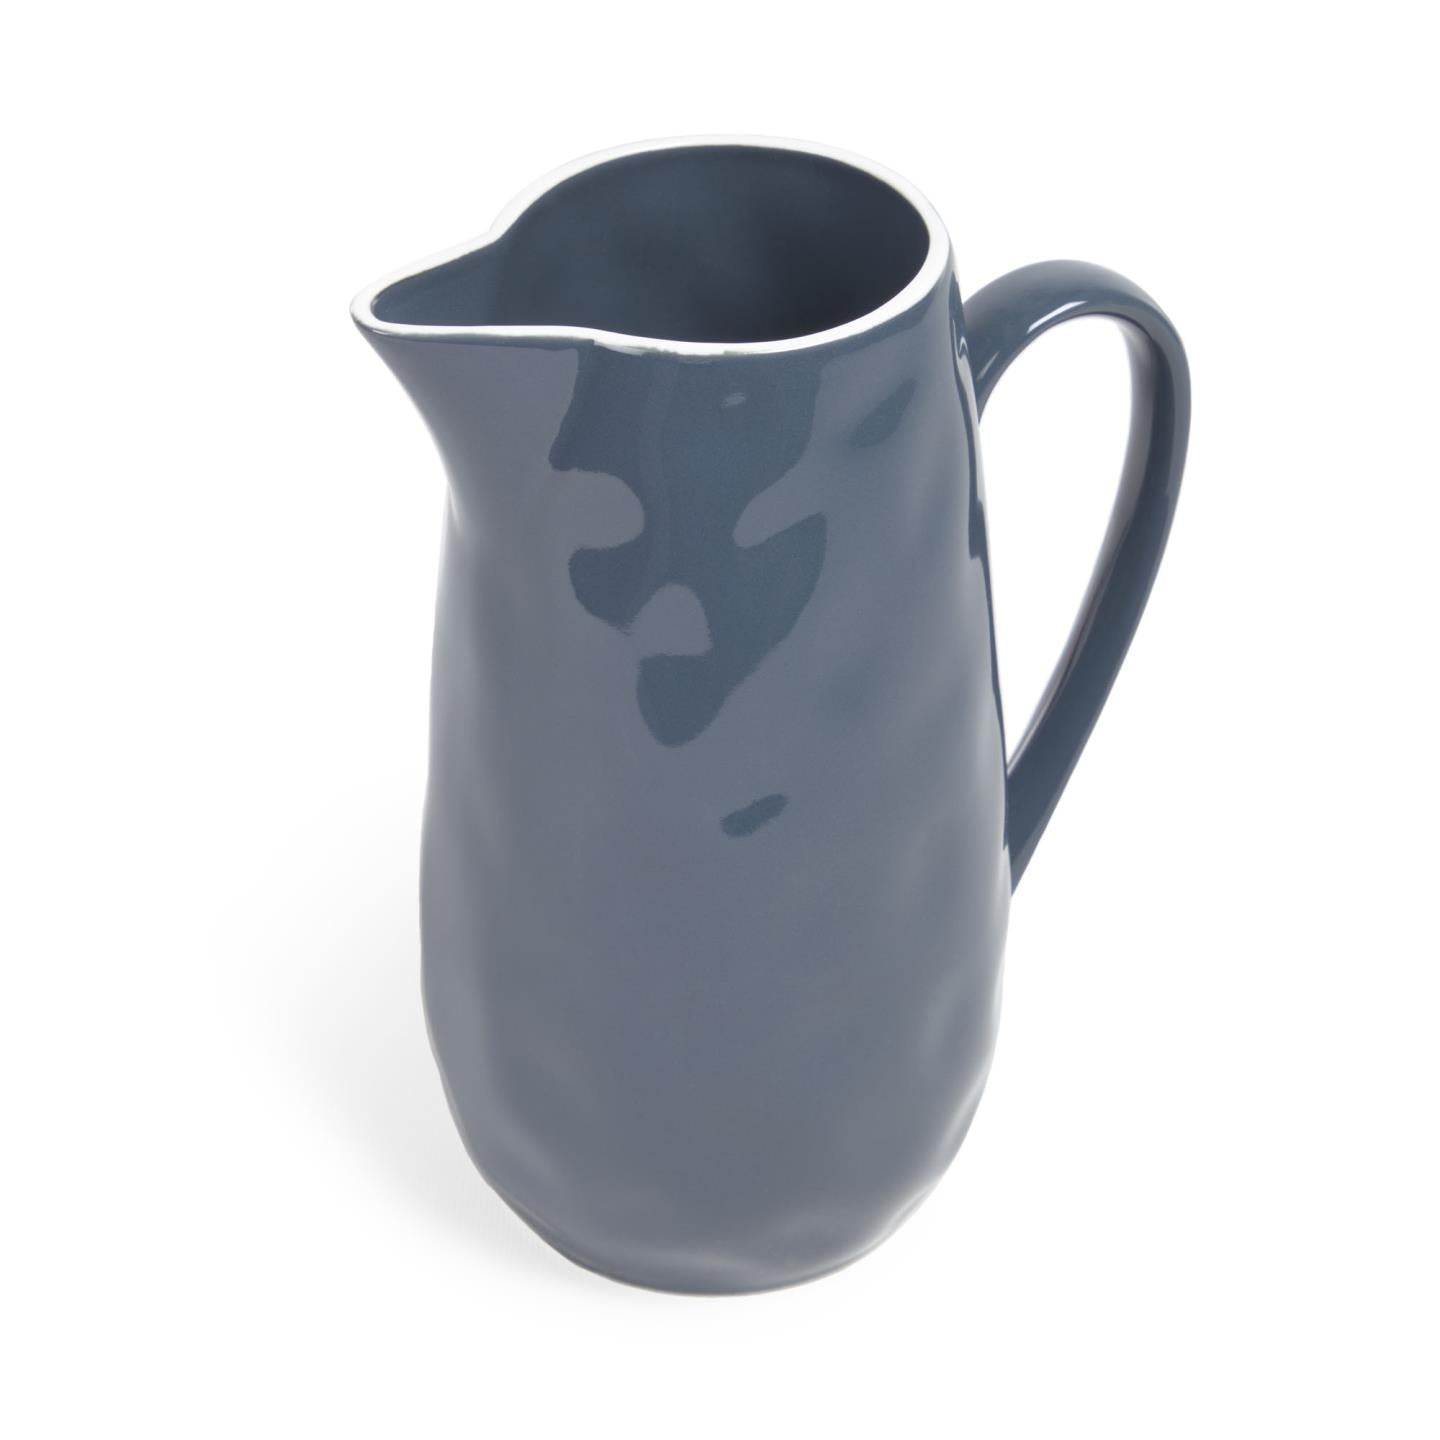 Pontis milk jug in blue porcelain